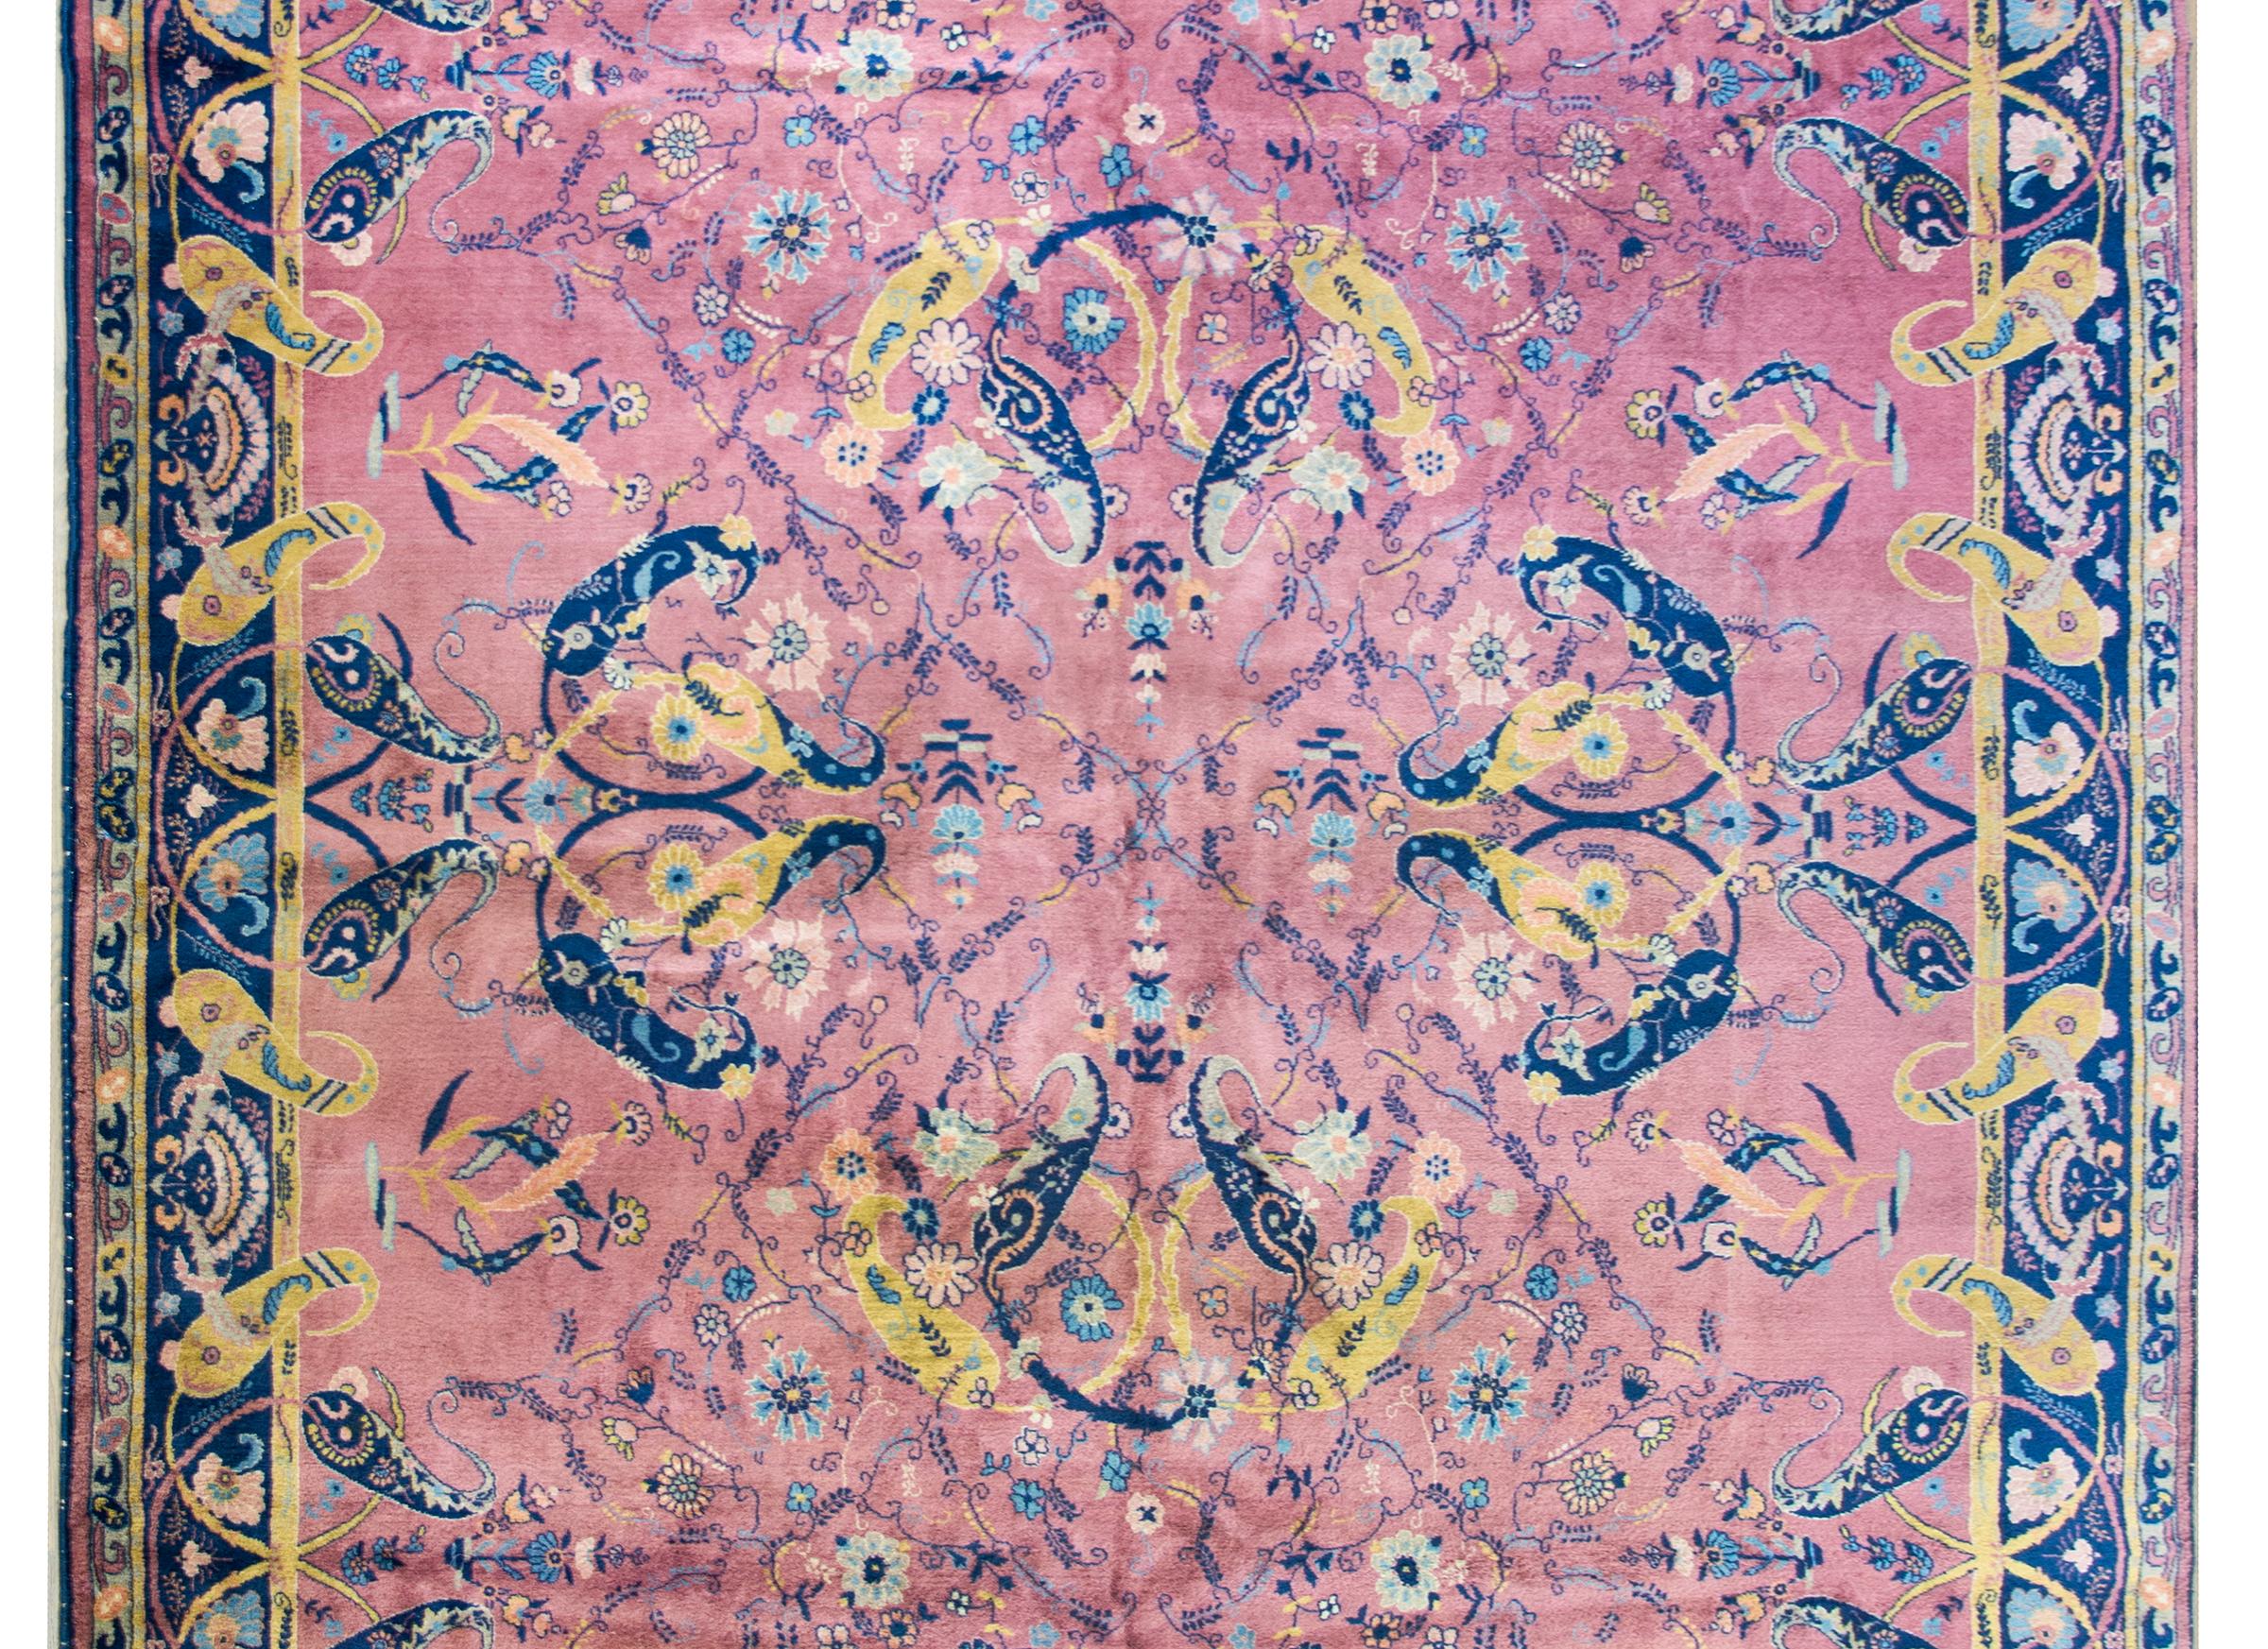 Un beau tapis indien Lahore du début du 20e siècle avec un grand médaillon central composé de paisleys tourbillonnants tissés en indigo et or, et vivant au milieu d'un champ de fleurs, le tout sur un fond rose. La bordure est sensationnelle avec